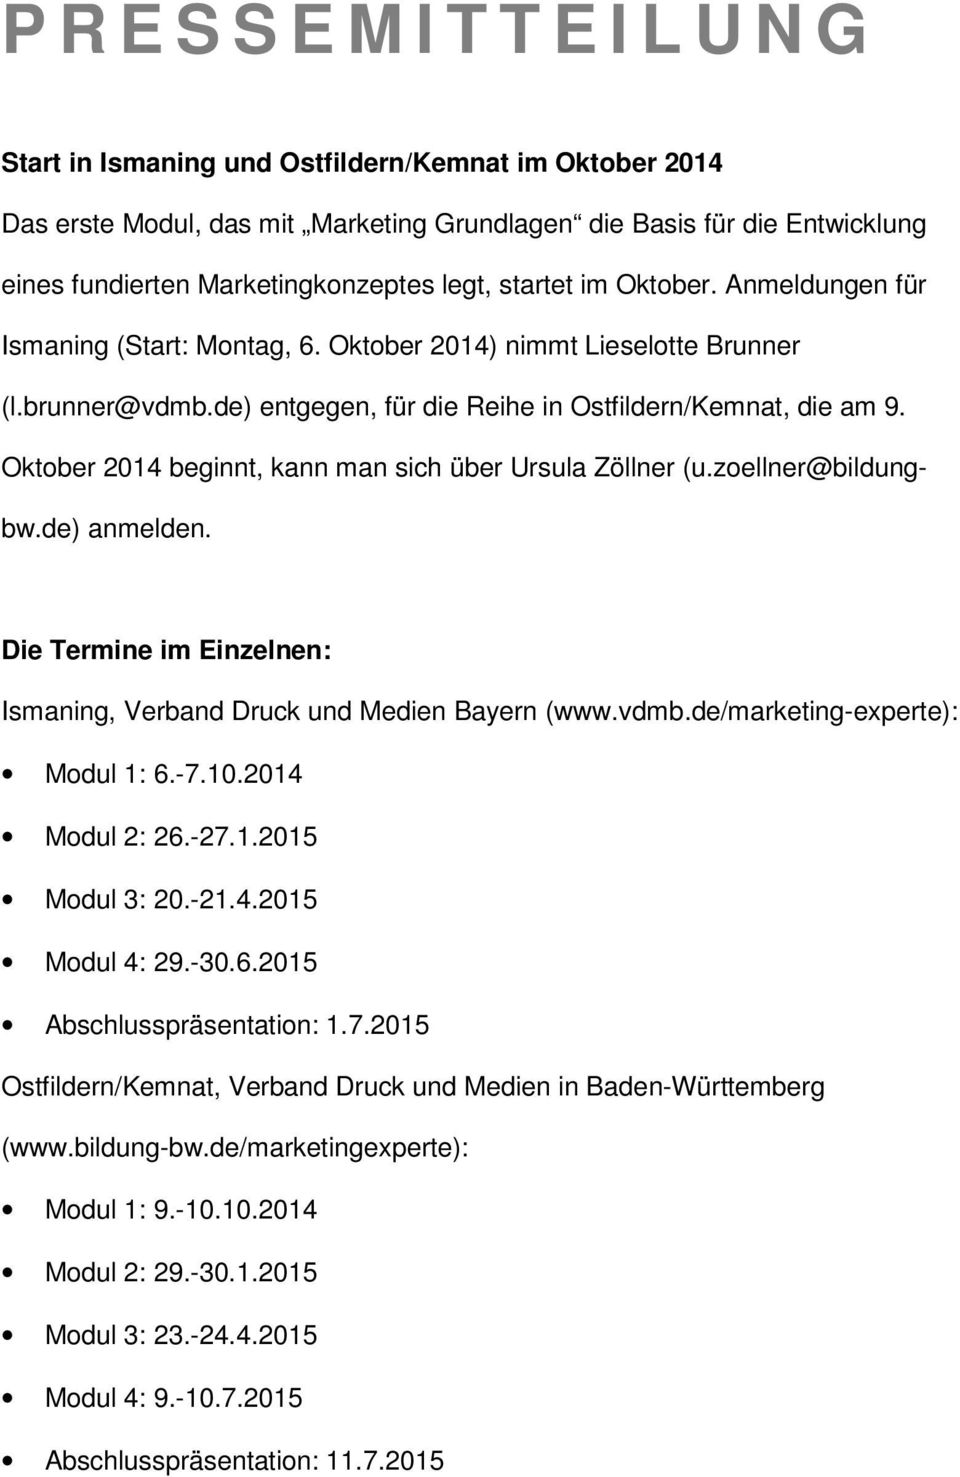 Oktober 2014 beginnt, kann man sich über Ursula Zöllner (u.zoellner@bildungbw.de) anmelden. Die Termine im Einzelnen: Ismaning, Verband Druck und Medien Bayern (www.vdmb.